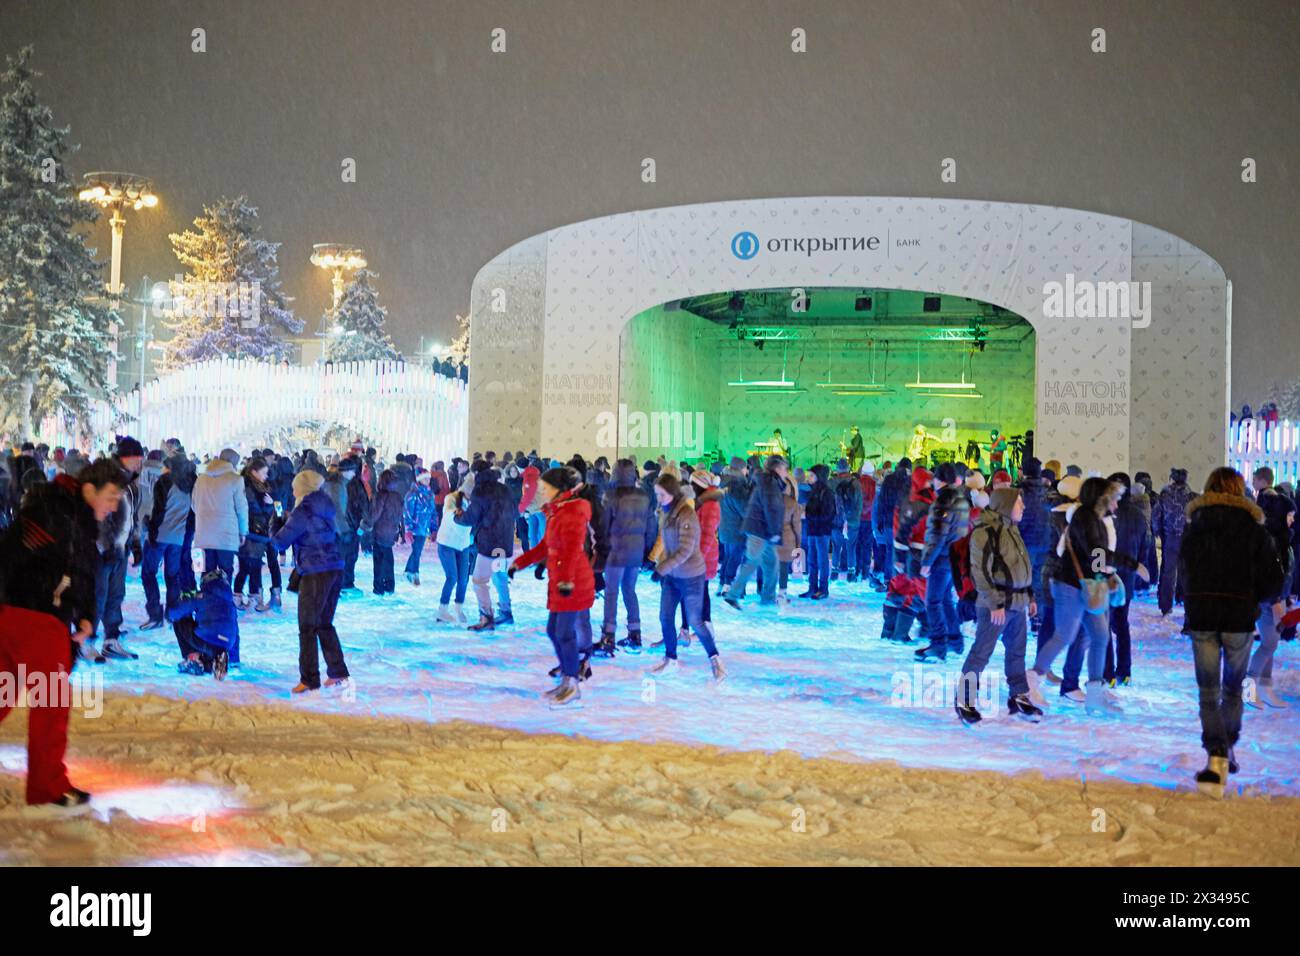 MOSKAU, RUSSLAND - 24. JAN 2015: Menschen auf der Eislaufbahn bei Schneefall am Abend in der VDNKh. Die Eislaufbahn in VDNKh ist die größte Eislaufbahn Europas – an Stockfoto